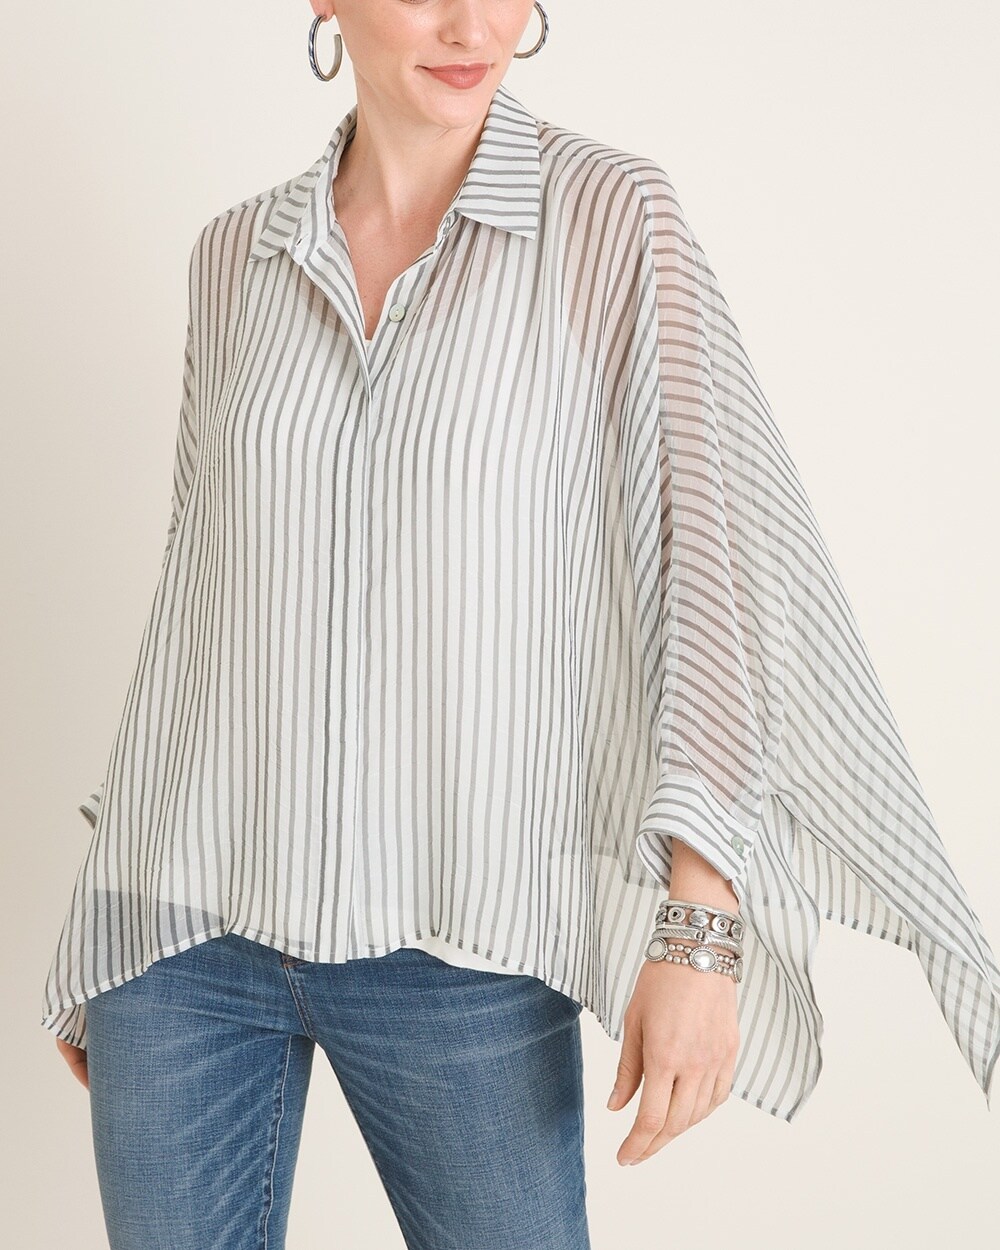 Marla Wynne for Chico's Chiffon Striped Dolman-Sleeve Shirt